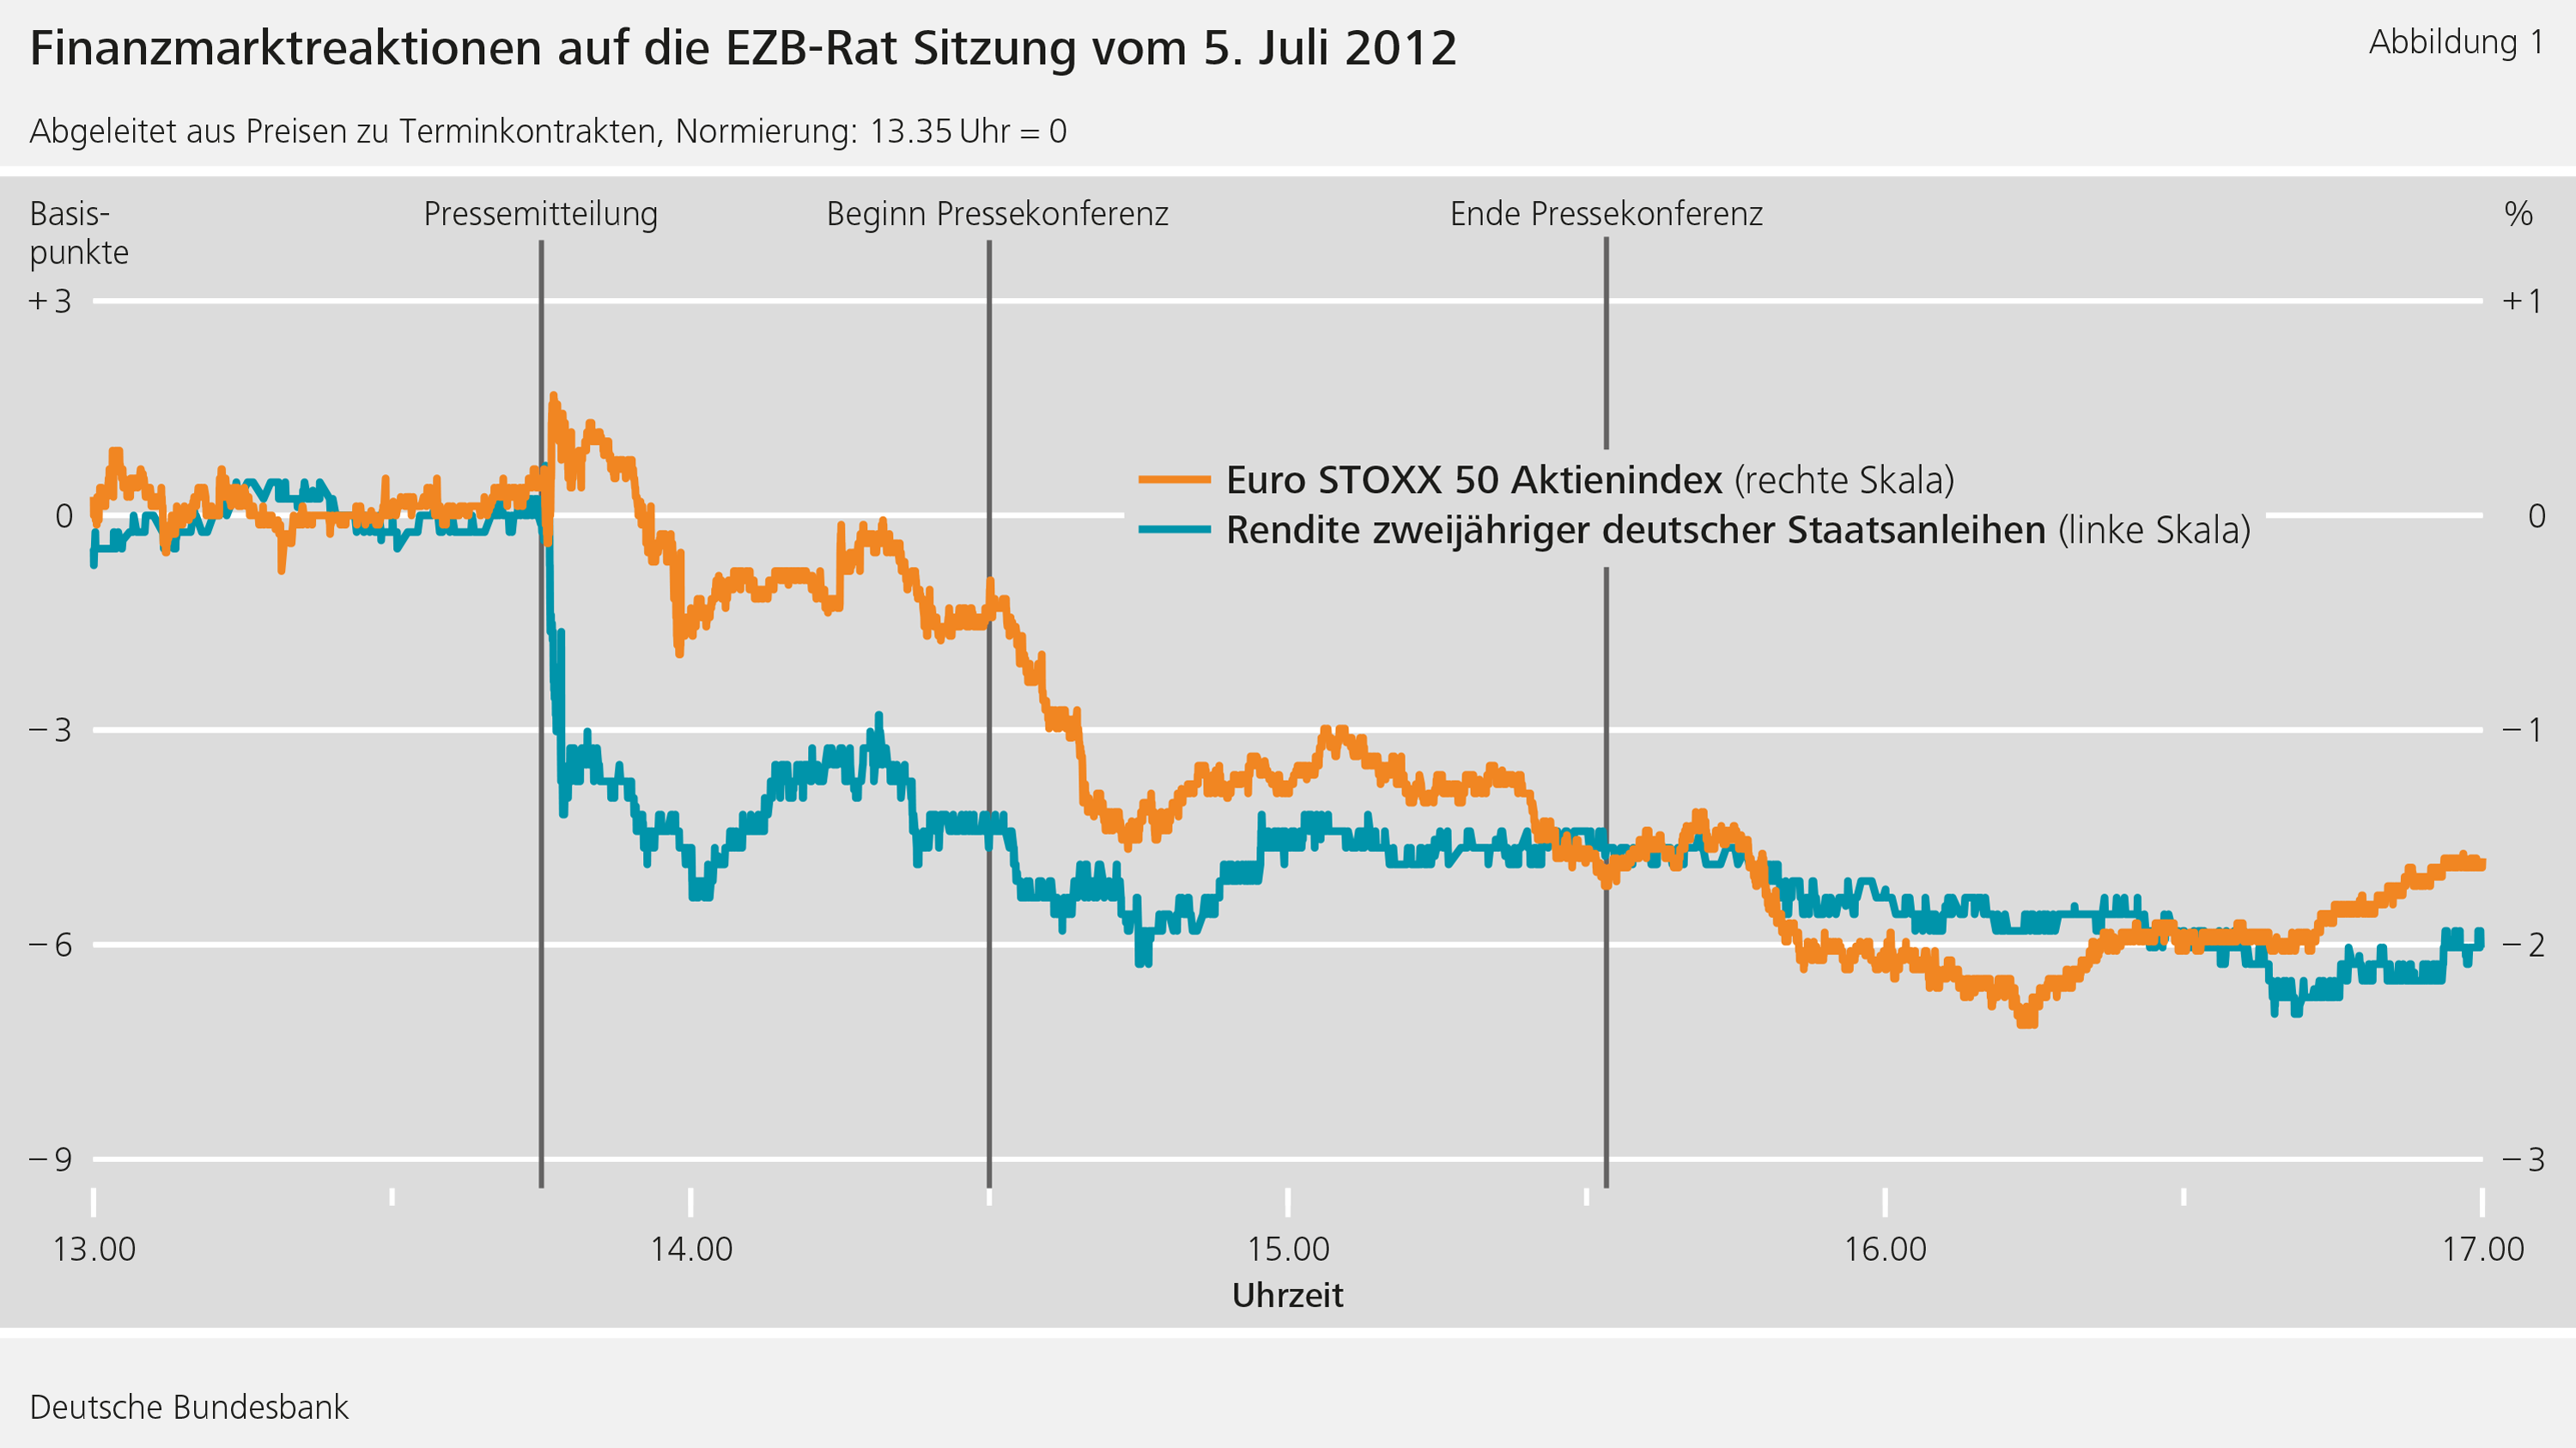 Abbildung 1: Finanzmarktreaktionen auf die EZB-Rat Sitzung vom 5. Juli 2012